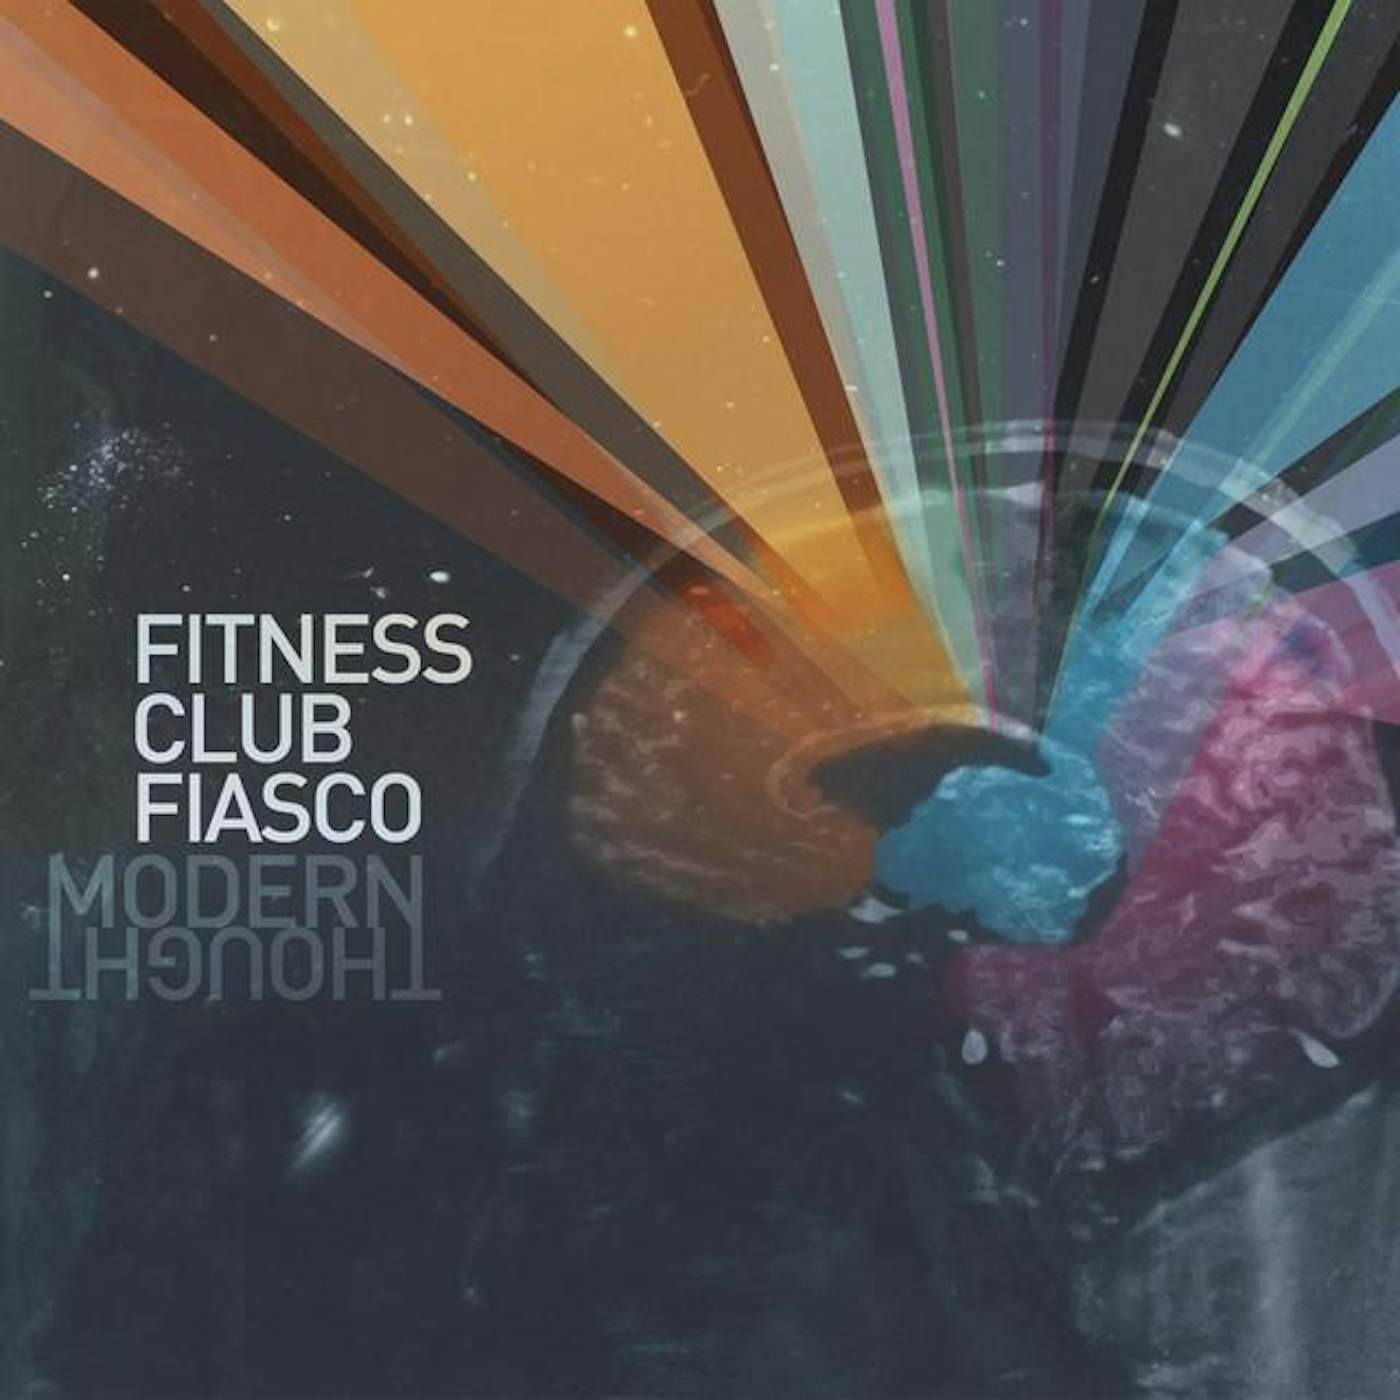 Fitness Club Fiasco